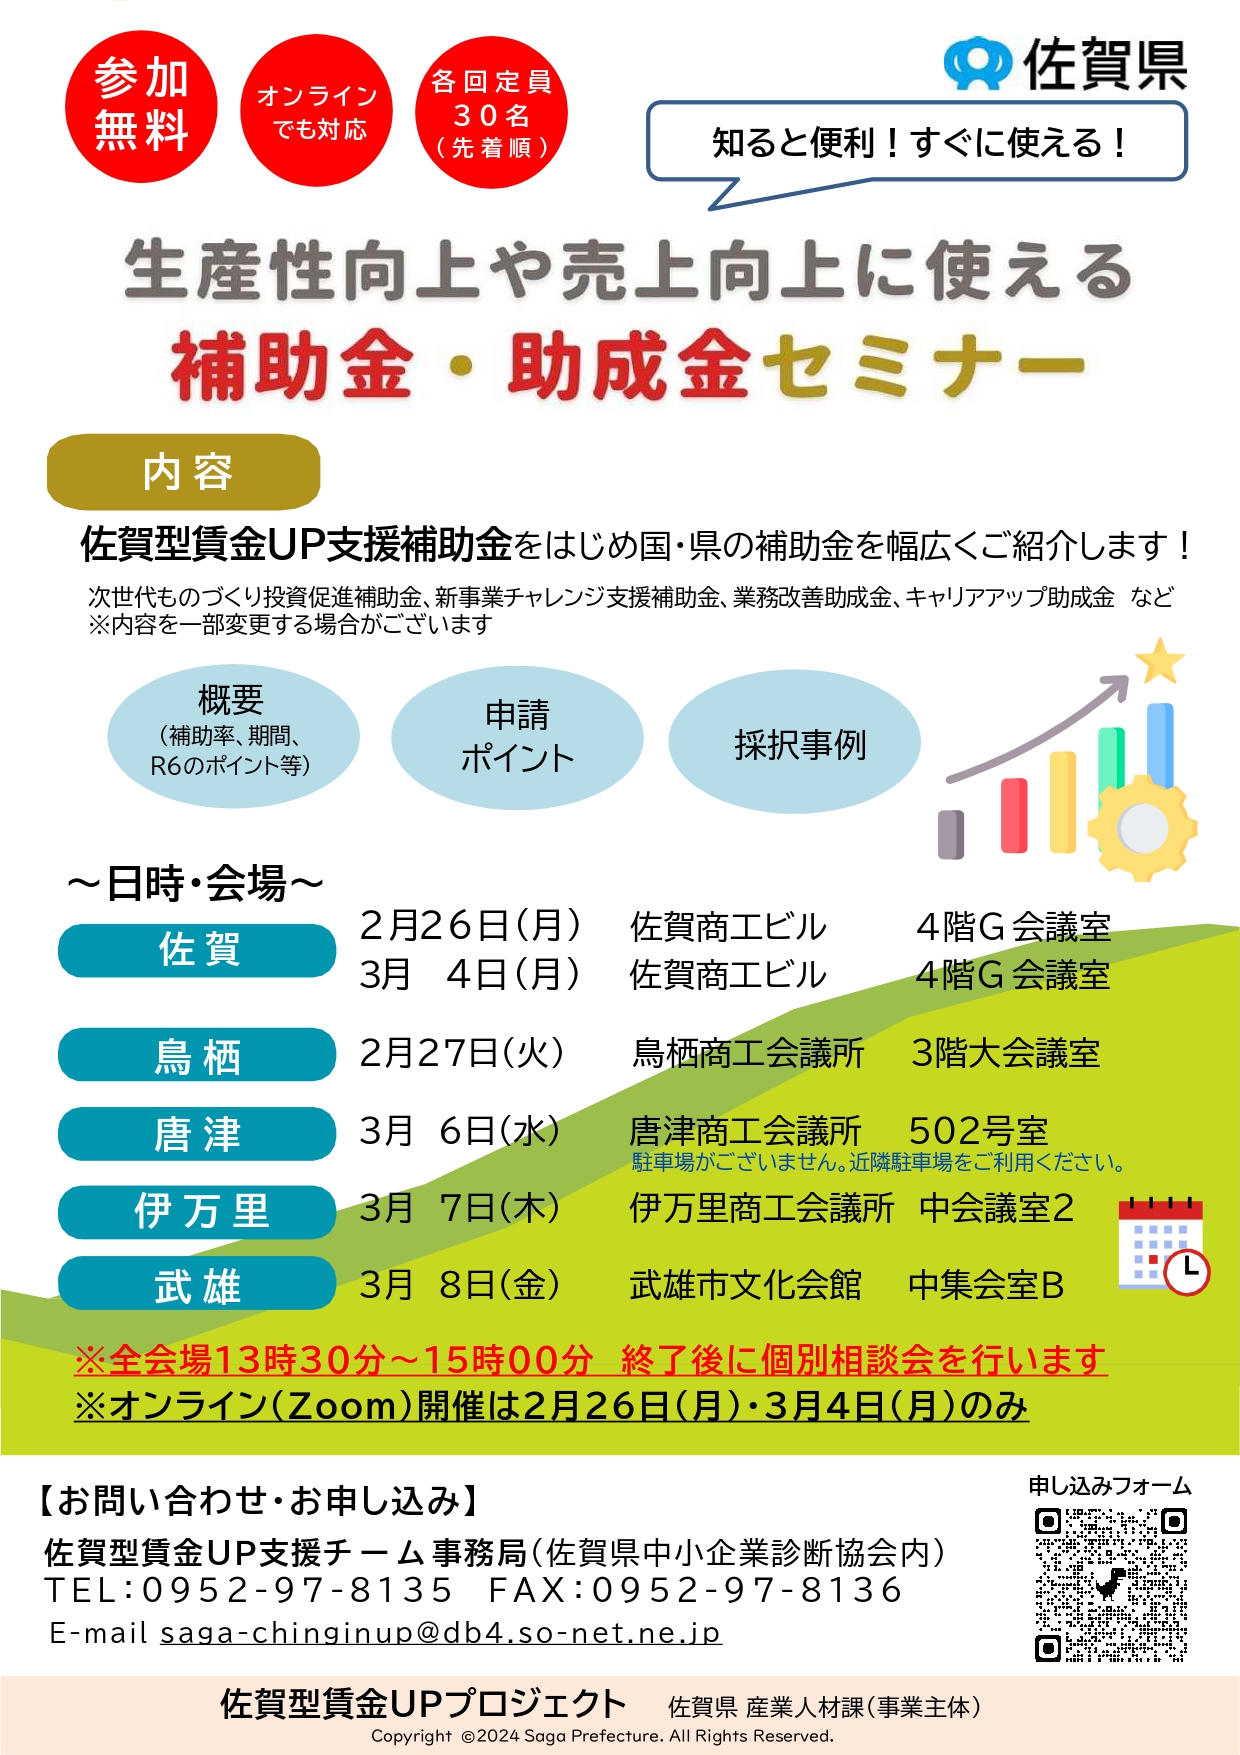 佐賀型賃金UPプロジェクト 補助金セミナーの開催について